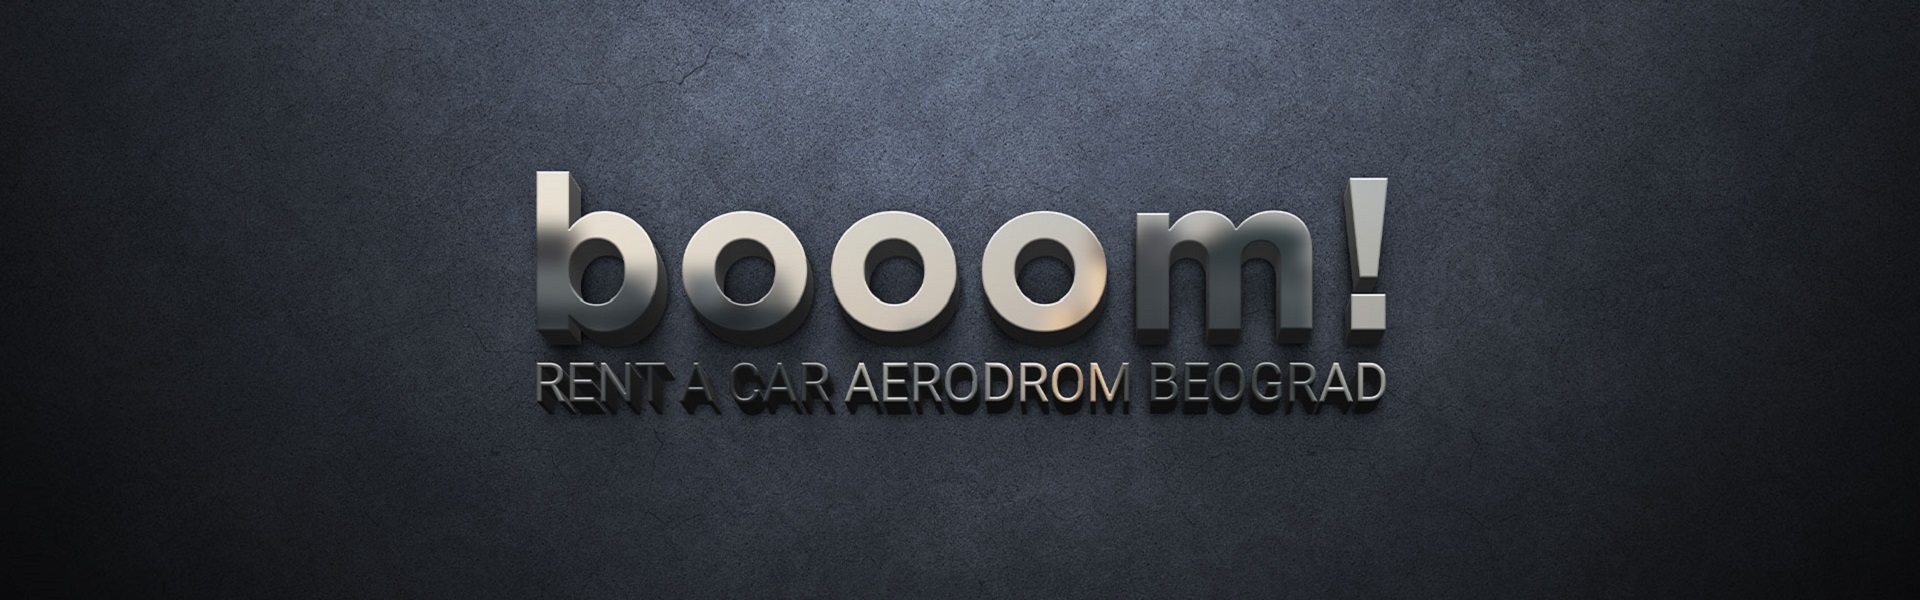 Rent a car Beograd Boom | Rent a car Aerodrom Beograd